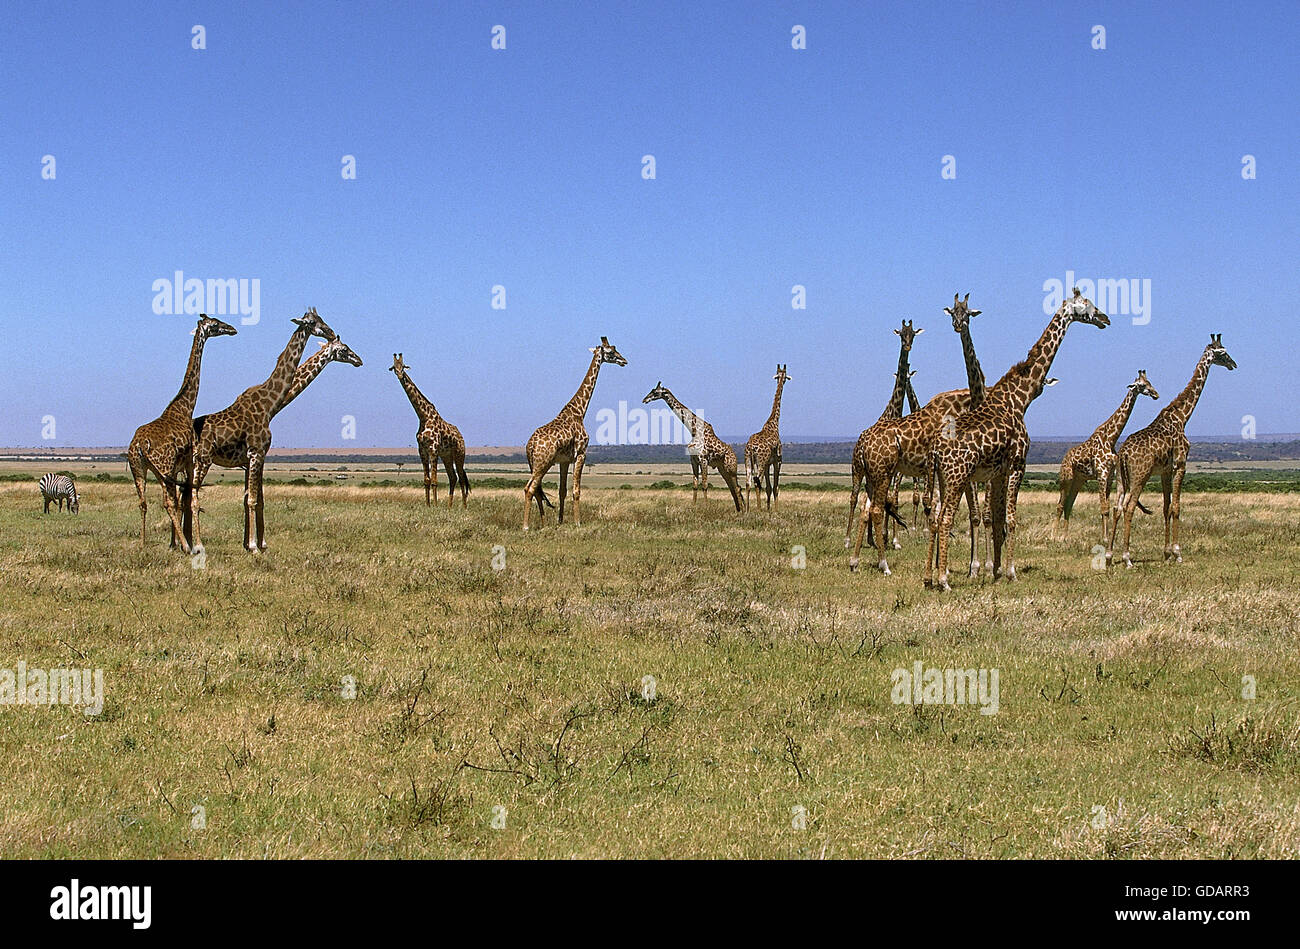 MASAI GIRAFFE giraffa camelopardalis tippelskirchi IN KENYA Stock Photo